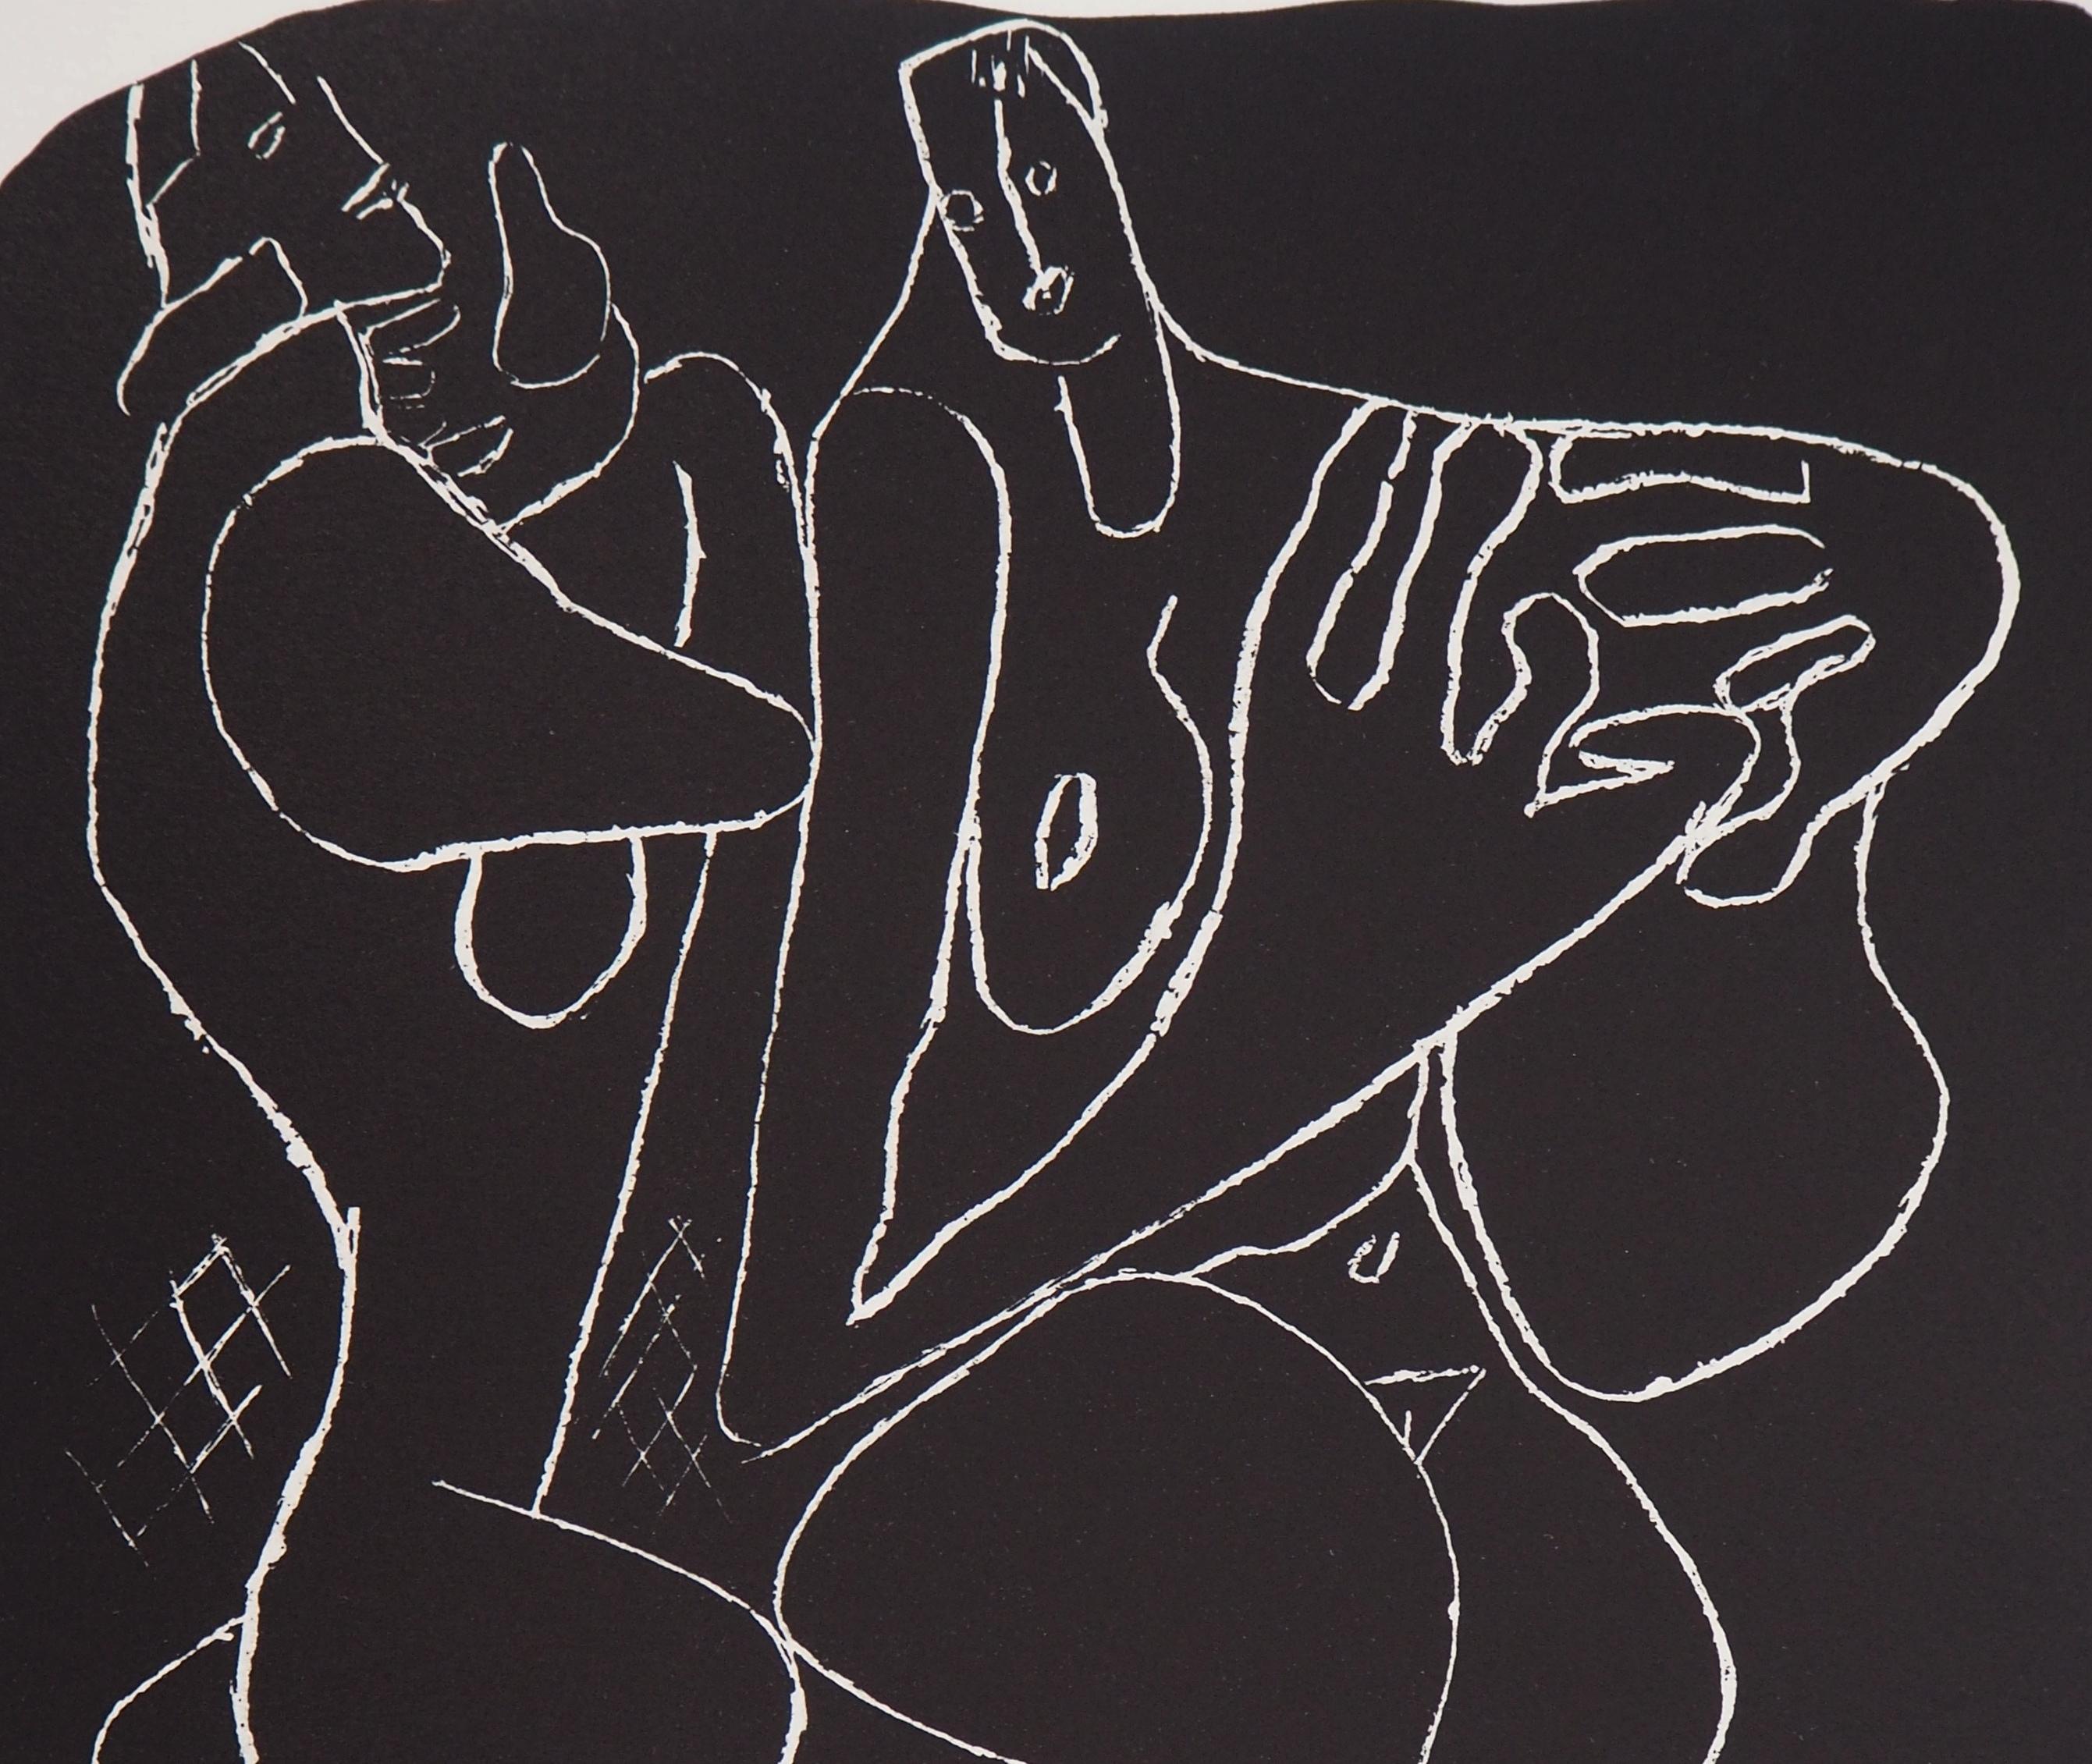 Le Corbusier
Deux nus, 1964

Lithographie originale
Signature imprimée dans la plaque
Limité à 250 exemplaires
Sur vélin d'Arches 42.5 x 35.5 cm (c. 16.5 x  13.7 in)
Édité par Vives (Paris) en 1964

Excellent état